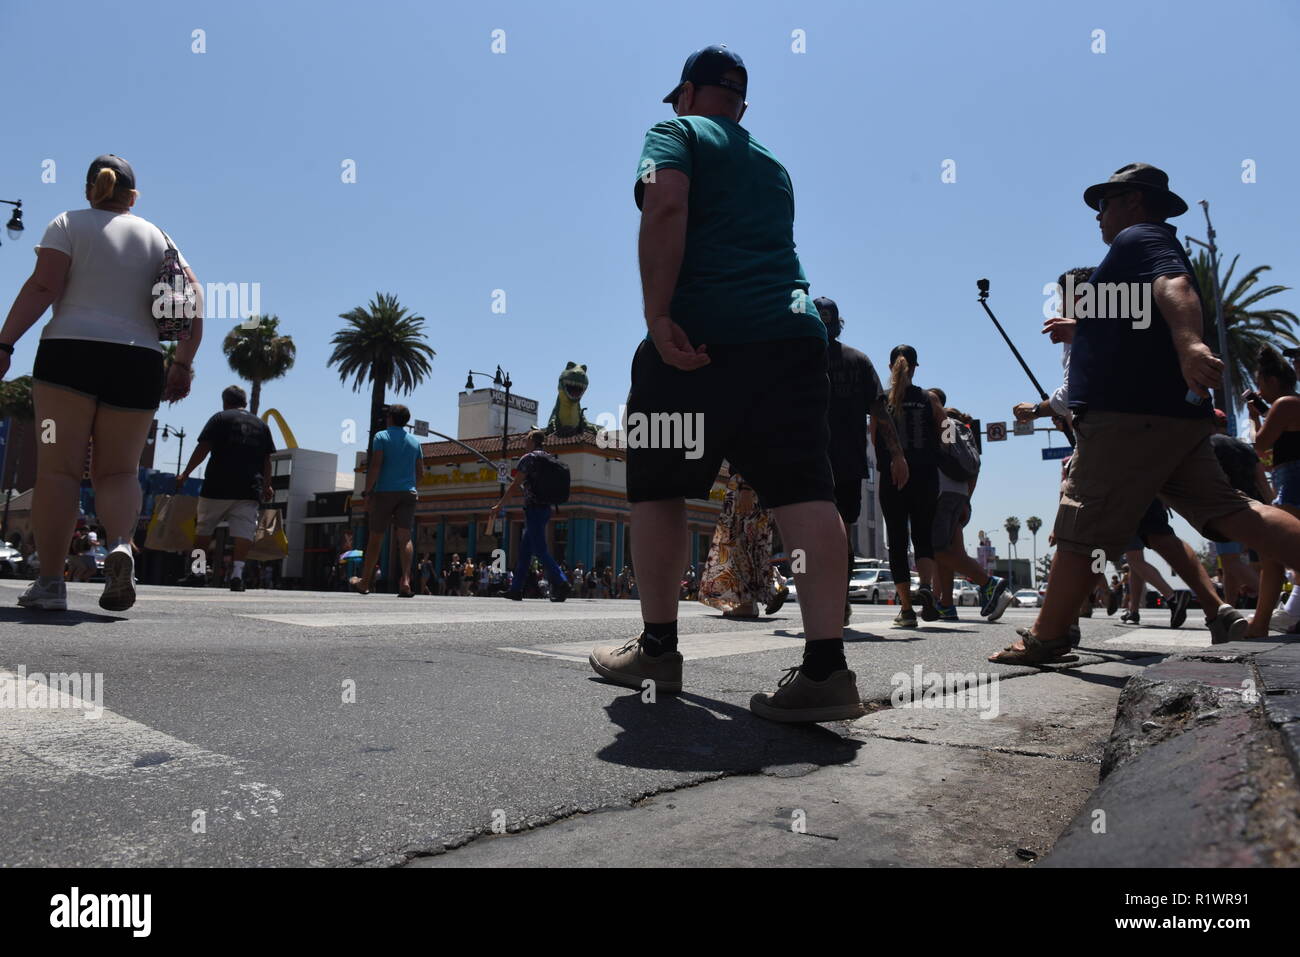 HOLLYWOOD - August 7, 2018: die Menschen überqueren die Straße von niedrigen Winkel Sicht auf dem Hollywood Blvd. in Hollywood, CA. Stockfoto